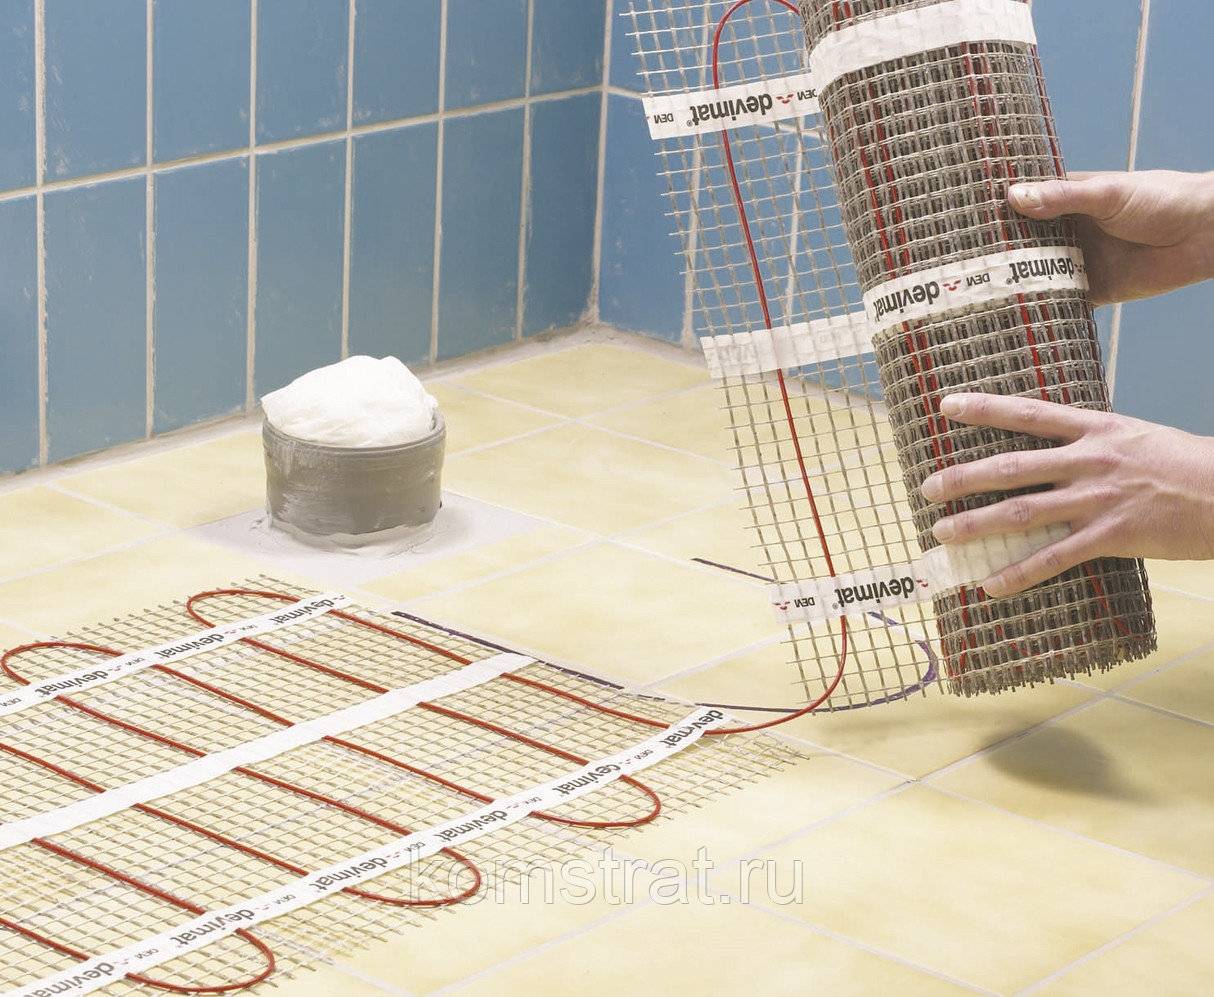 Теплый пол в ванной комнате - водяной и электрический